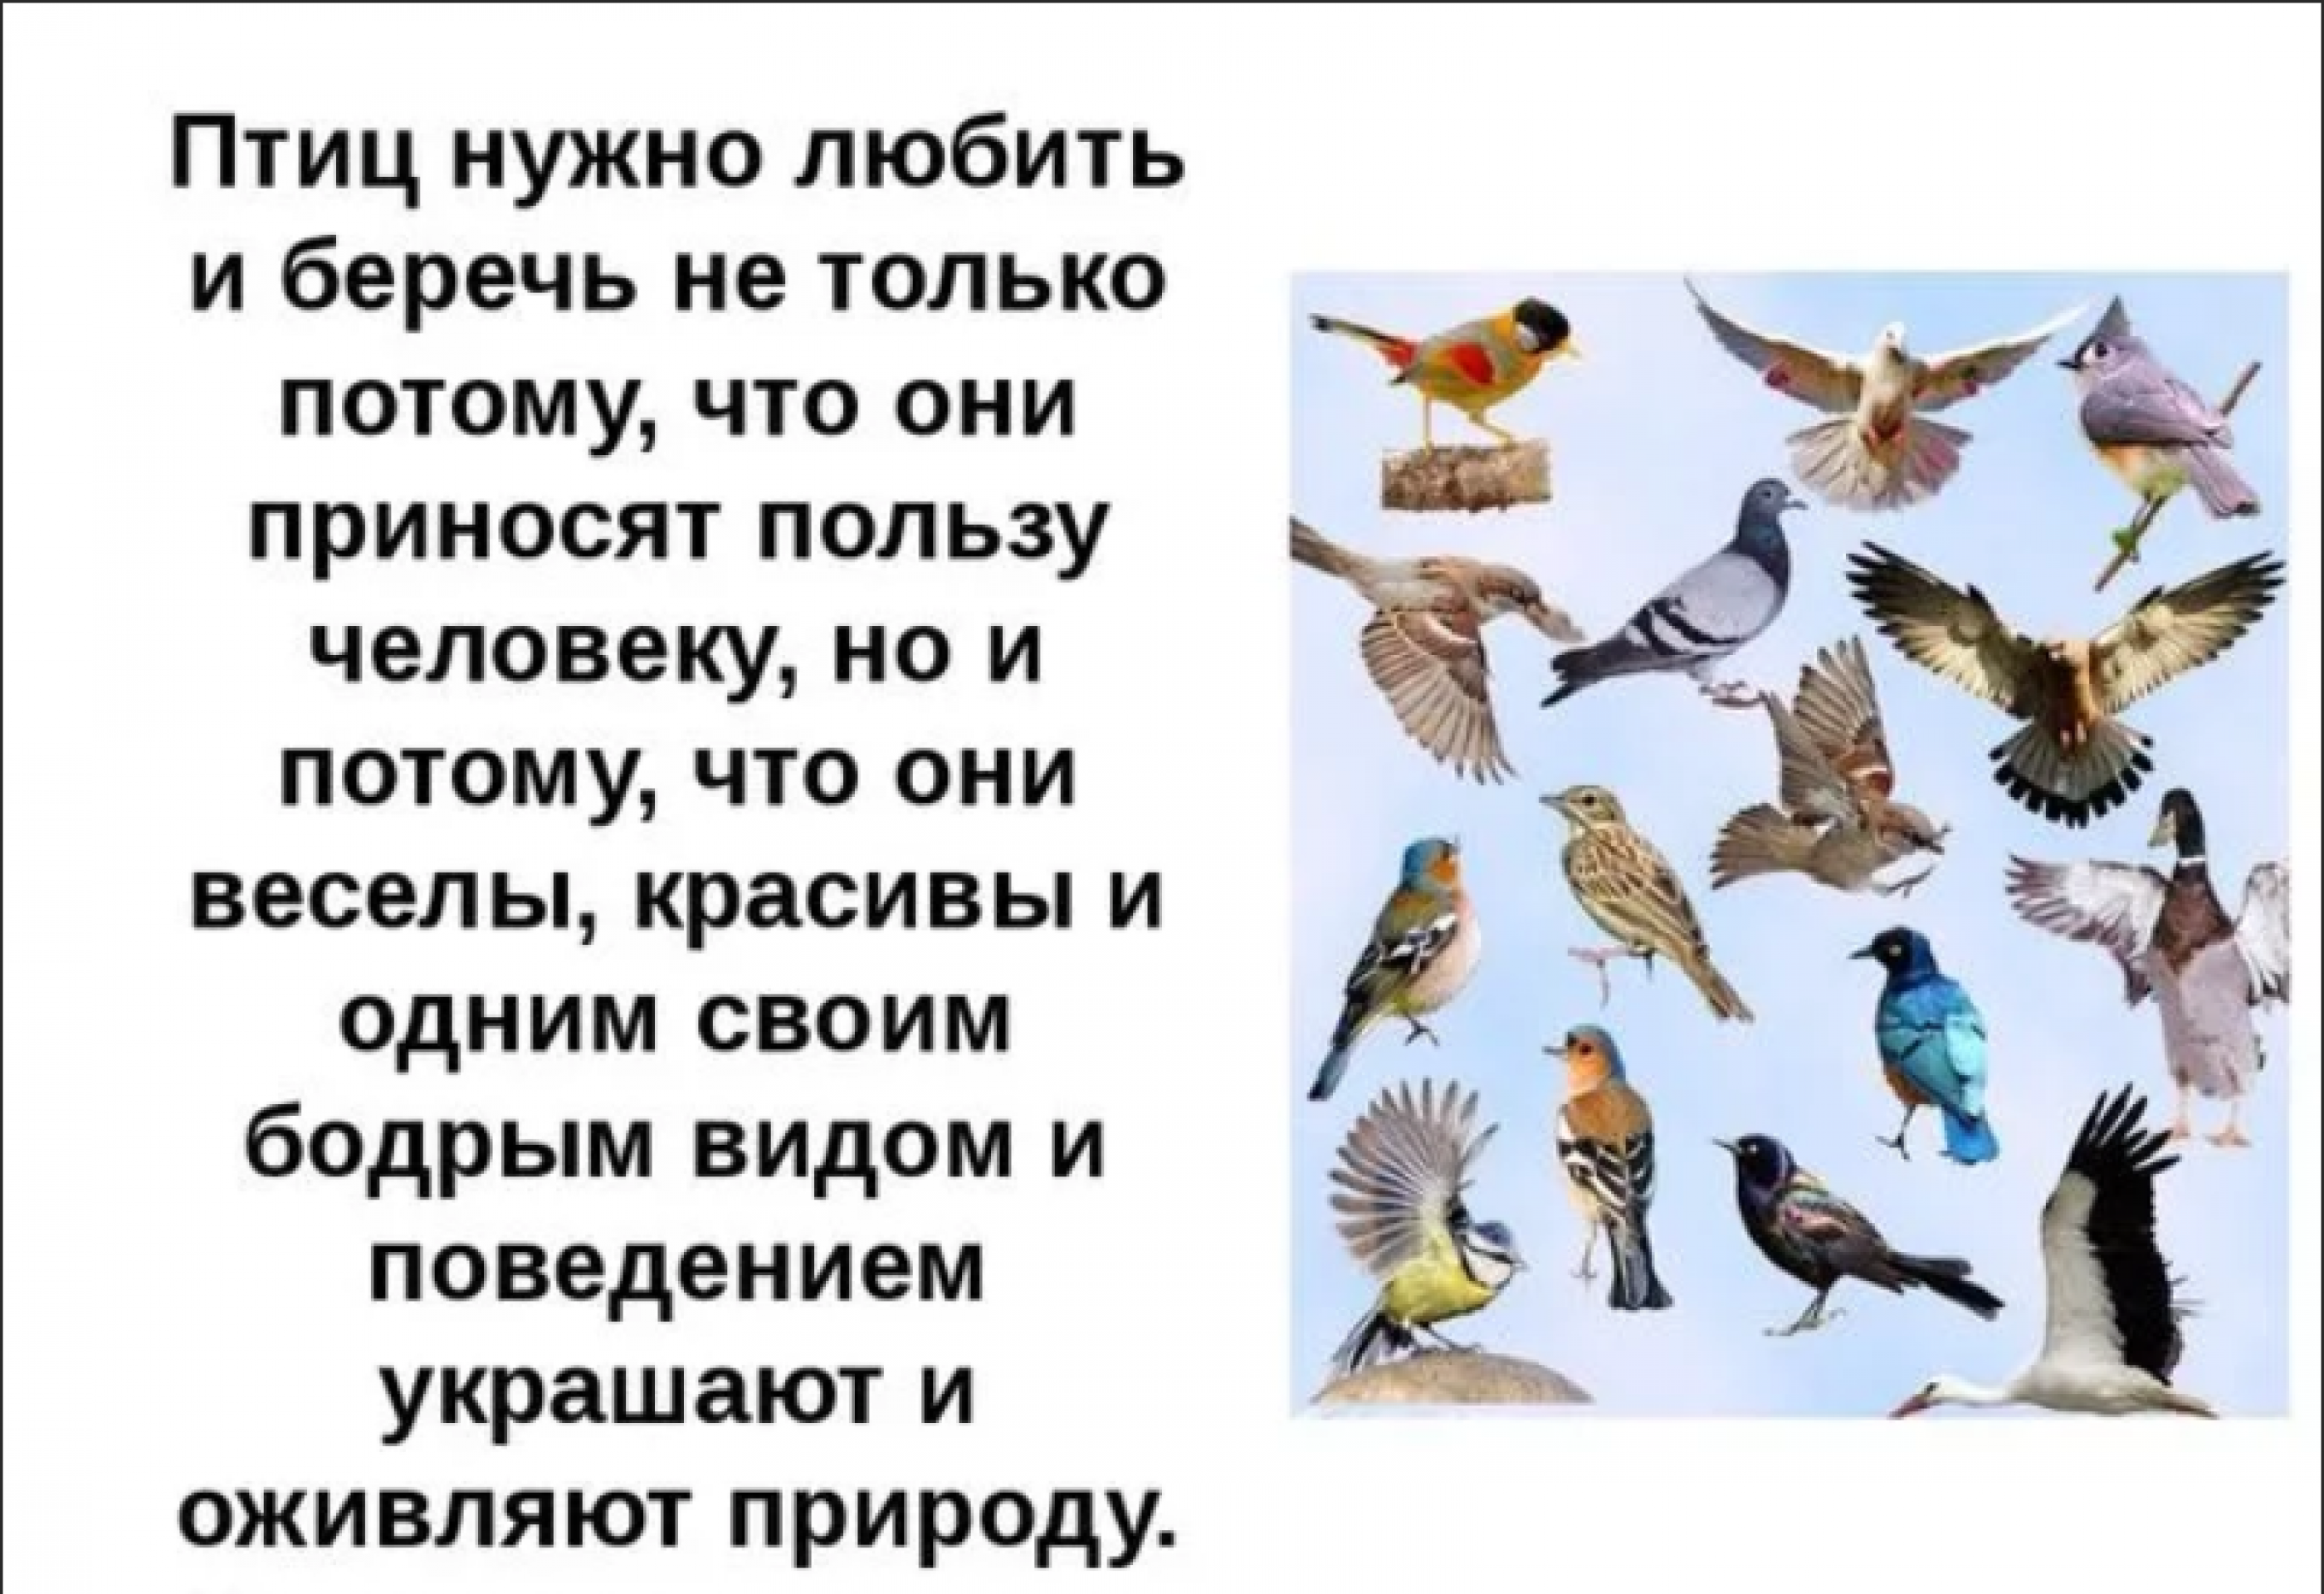 Птицы наши друзья. Пчитчы нашы друзя. Проект птицы наши друзья. Птицы для презентации.